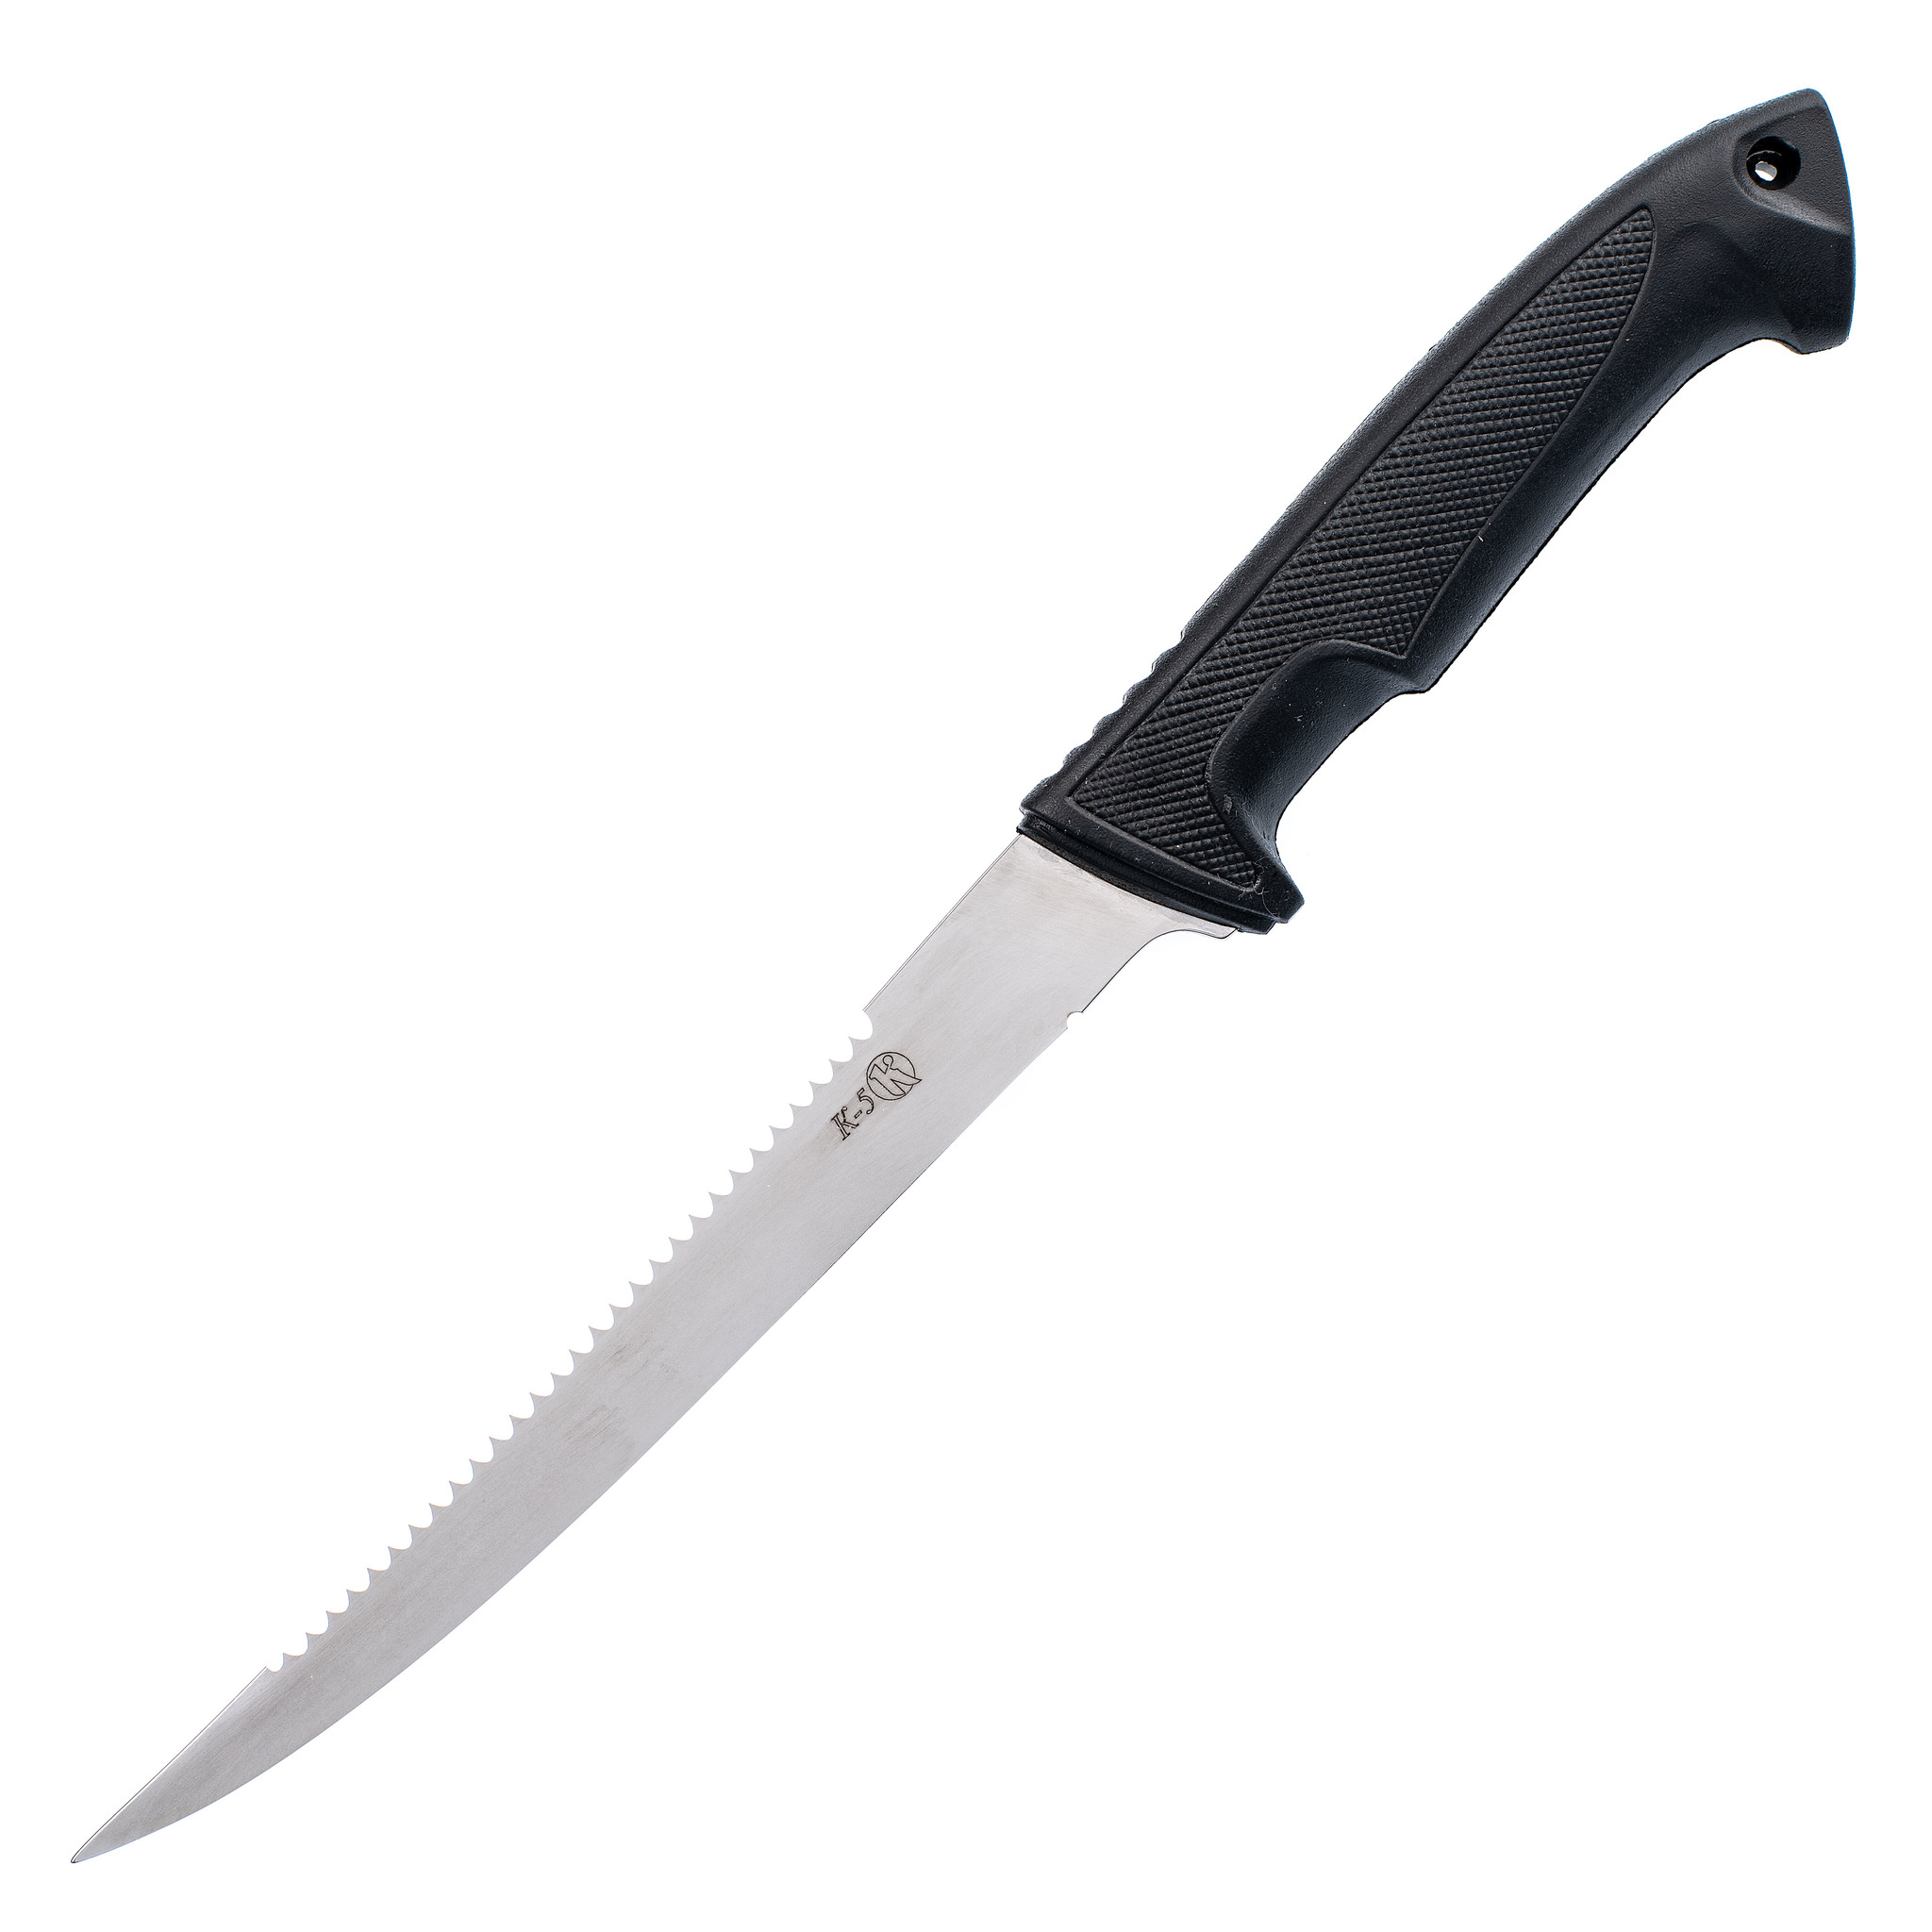 Нож филейный К-5, Кизляр -  нож для филейной разделки рыбы в .